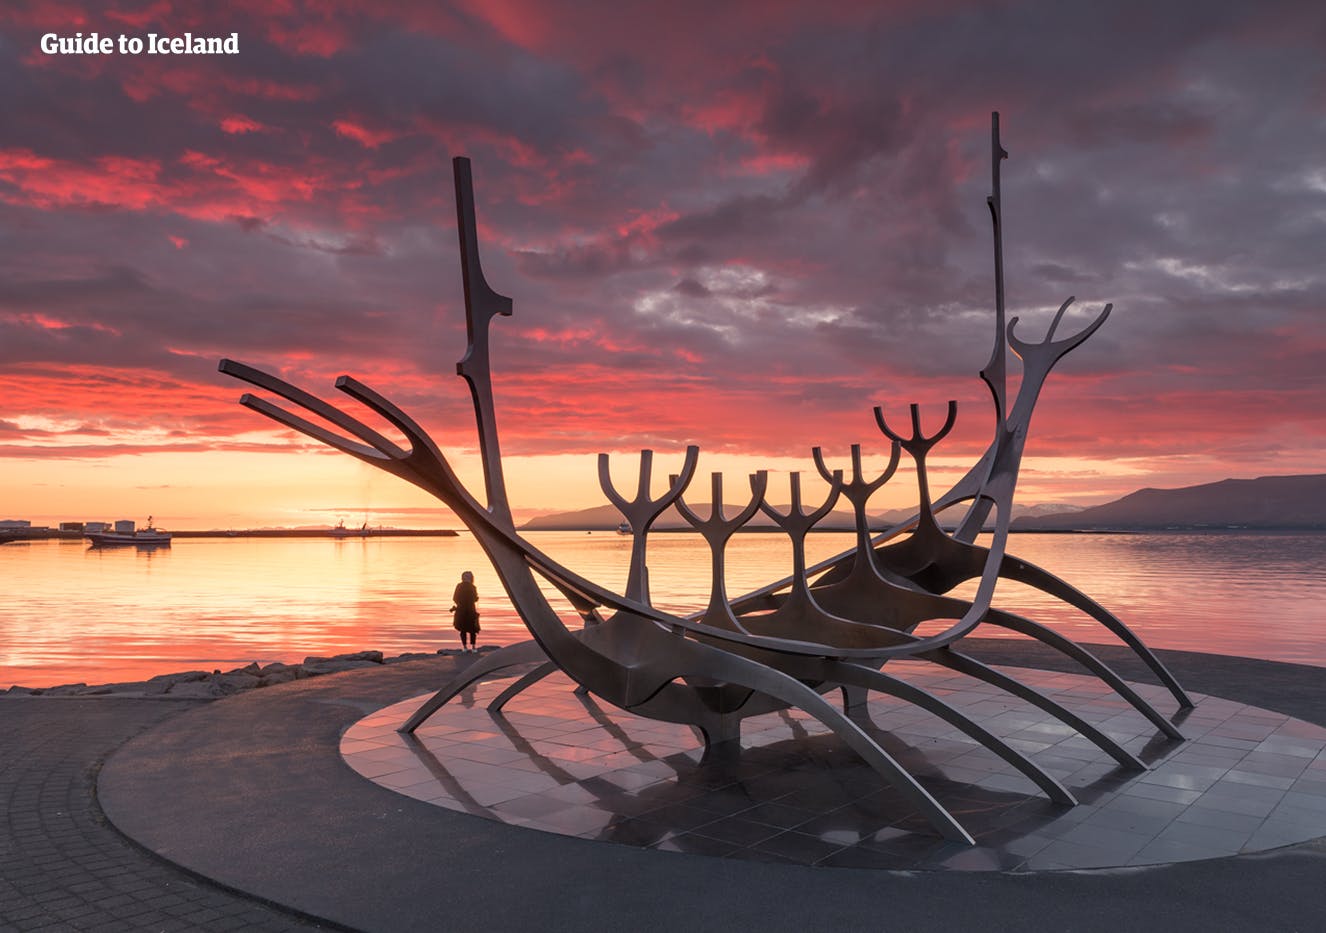 Sun Voyager-monumentet ligger på kysten ved Reykjavik, ikke langt fra koncerthallen Harpa.